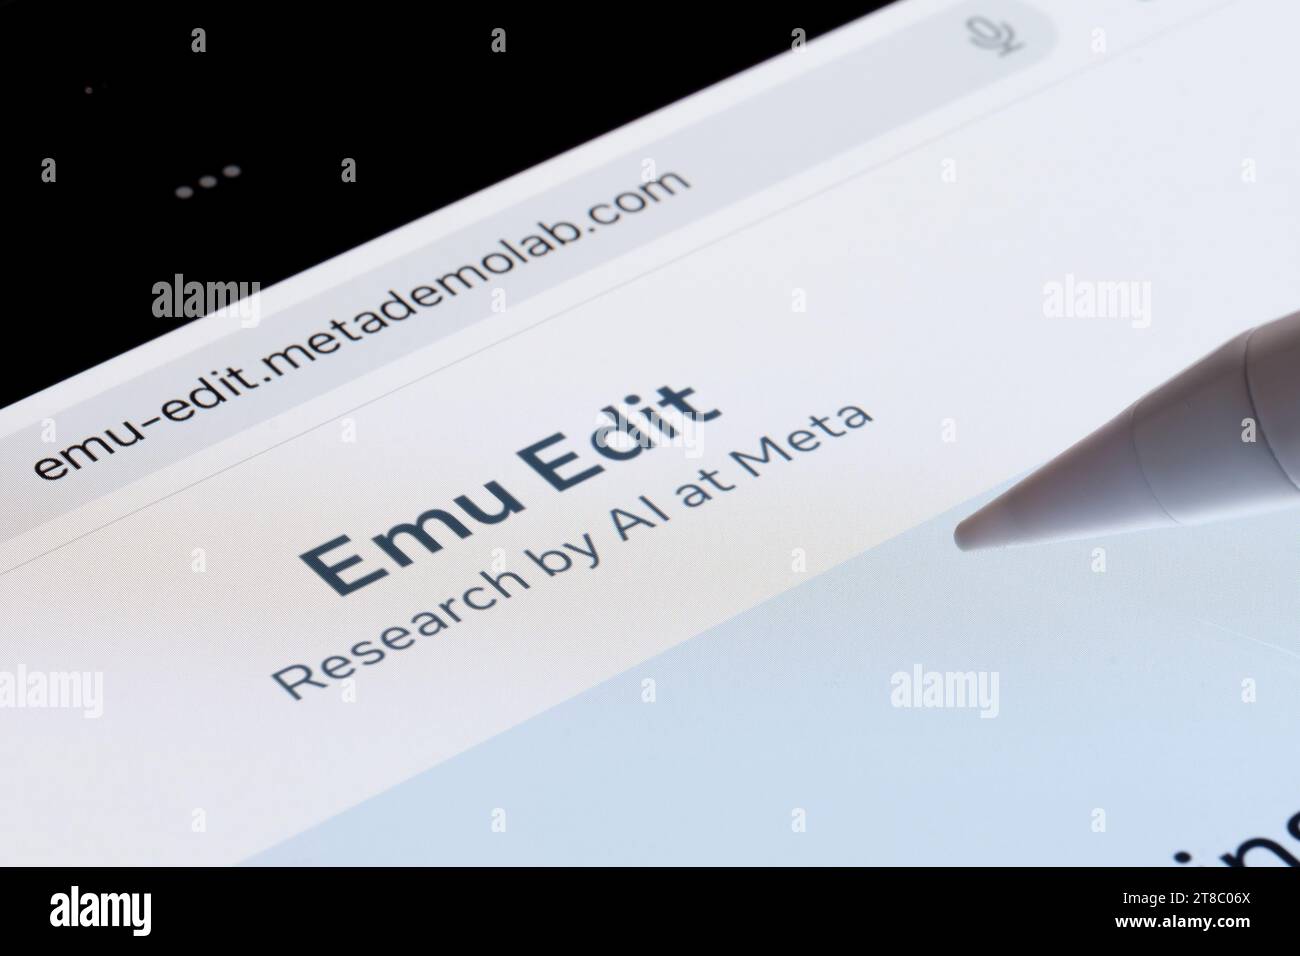 Logo de l'outil EMU Edit visible sur l'écran de l'ipad. Nouvel outil d'édition d'image ai de Meta. Stafford, Royaume-Uni, 19 novembre 2023 Banque D'Images